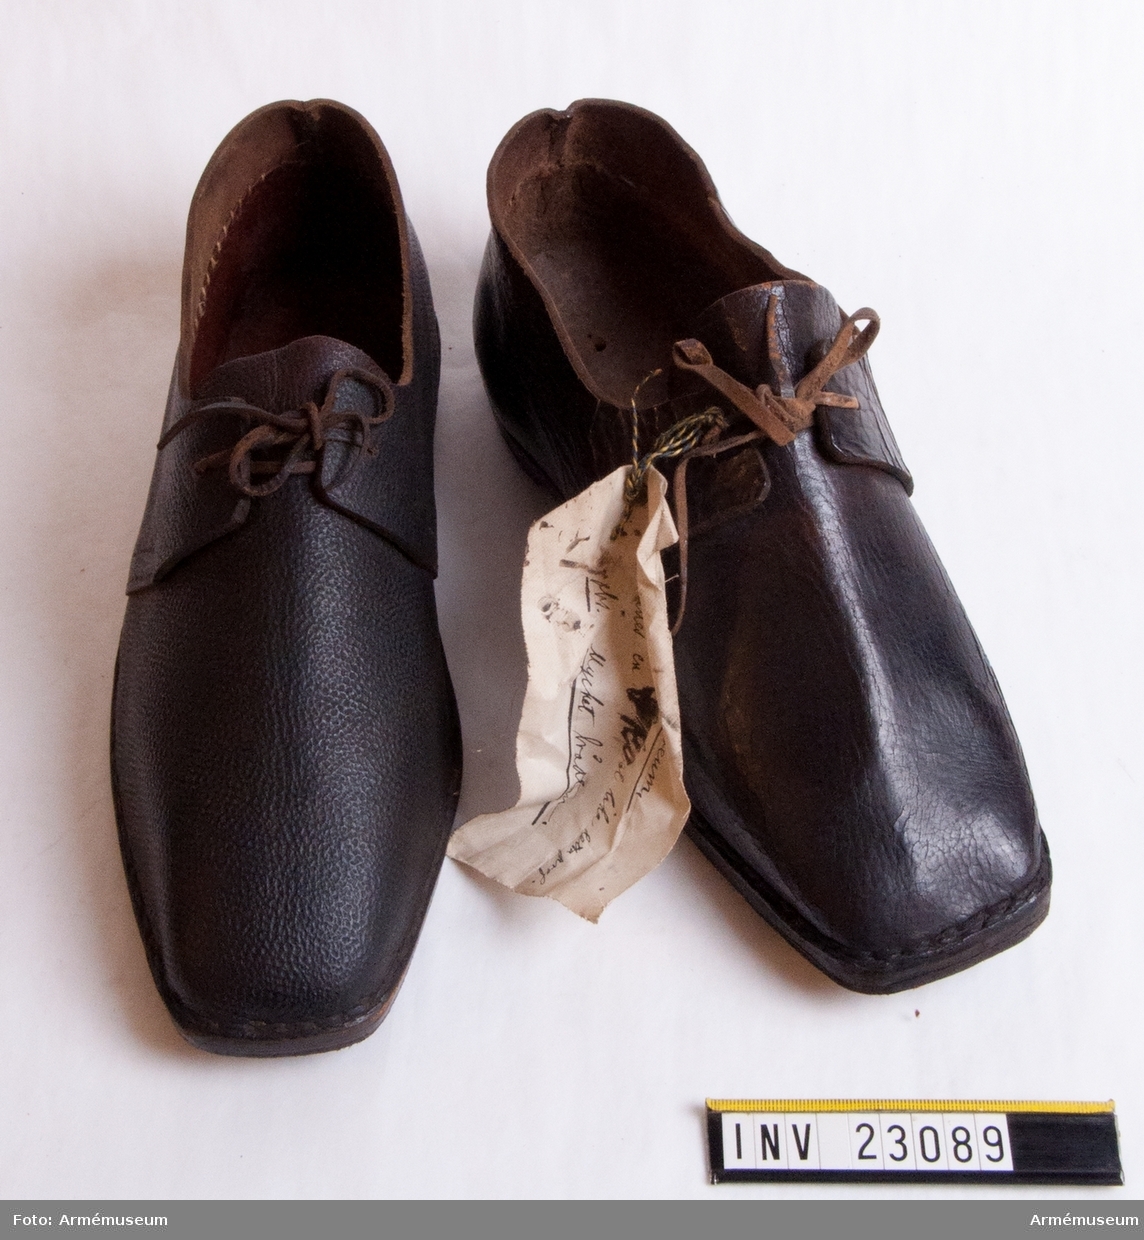 Grupp C I.
Skor av brunt läder. En av skorna har rött lacksigill.

Vidhängande lapp på ena skon med text: "För Artillerimuseum, Beställer en sko lika detta prof. Obs. Mycket brådtom."